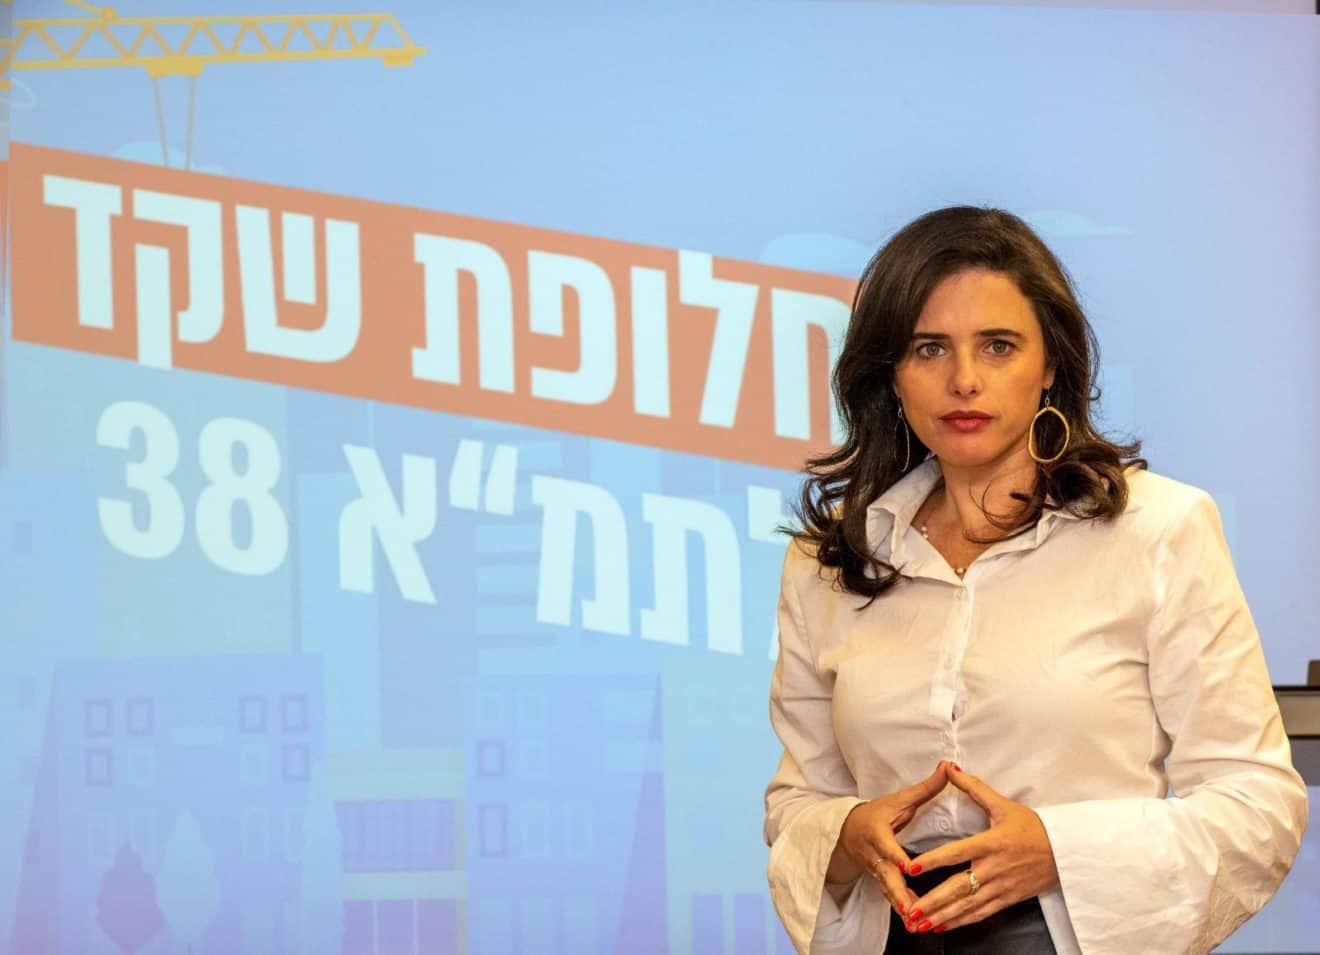 הושג מתווה: השרה שקד התערבה במחדל הסעות תלמידי מוריה ברקאי בחיפה